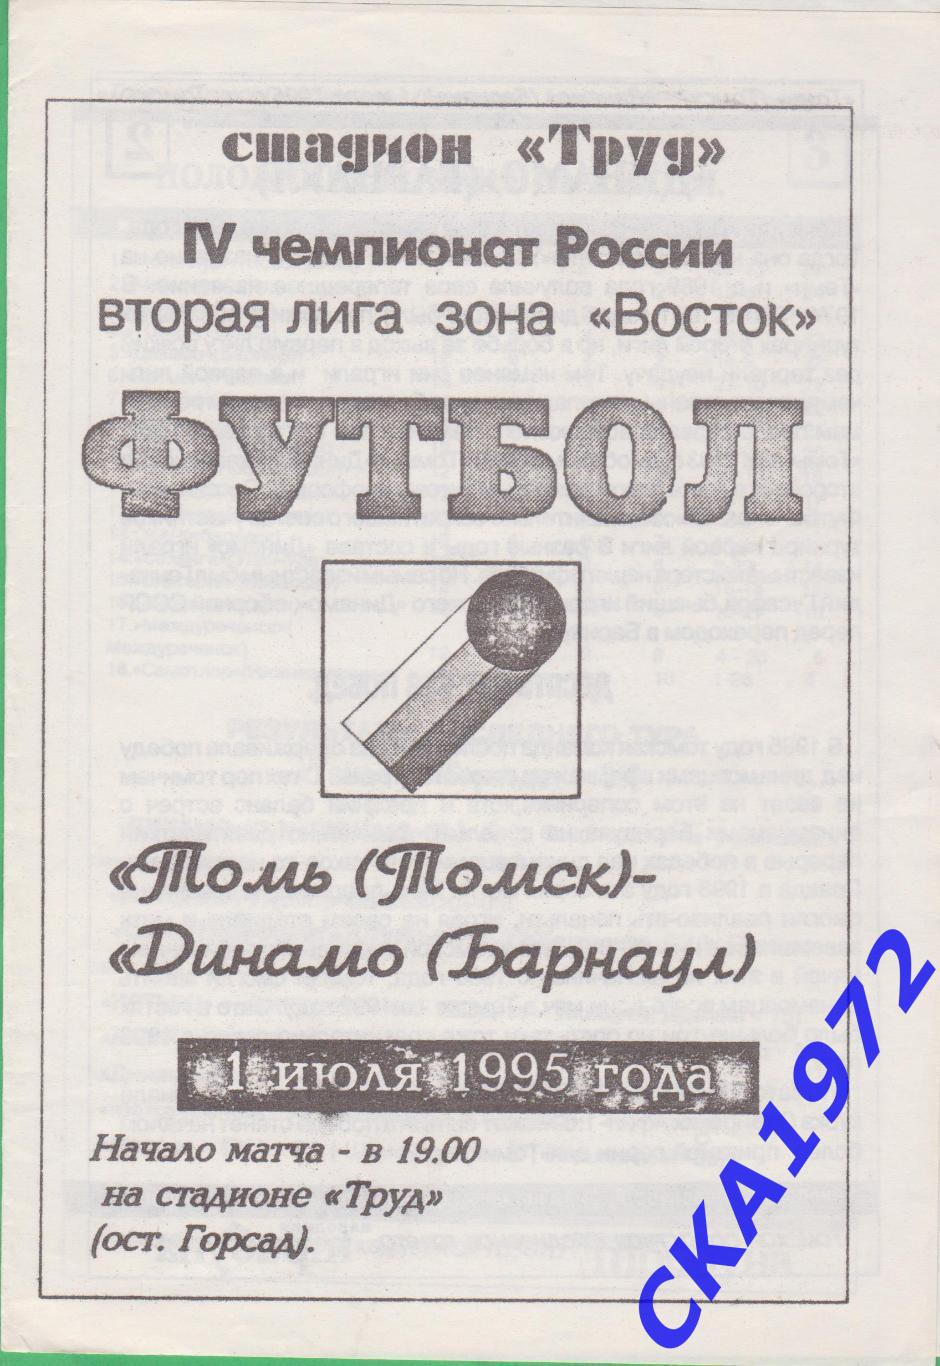 программа Томь Томск - Динамо Барнаул 1995